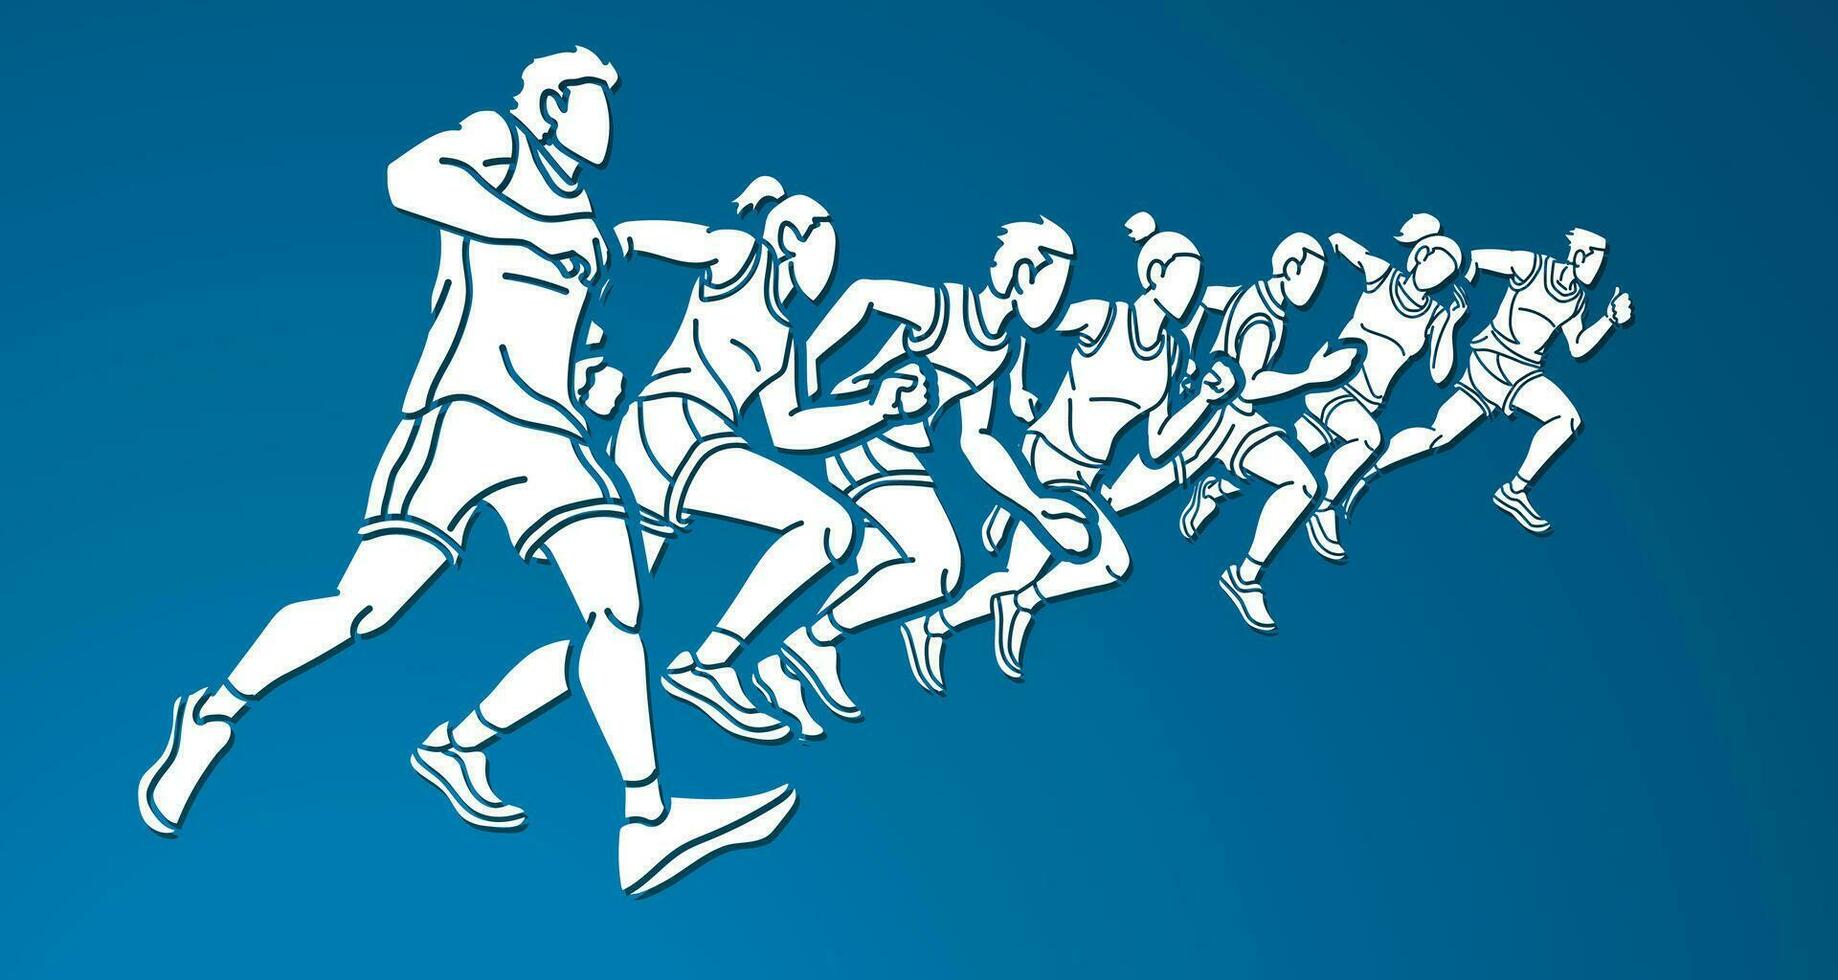 groupe de gens fonctionnement ensemble coureur marathon mélanger Masculin et femelle joggeur dessin animé sport graphique vecteur